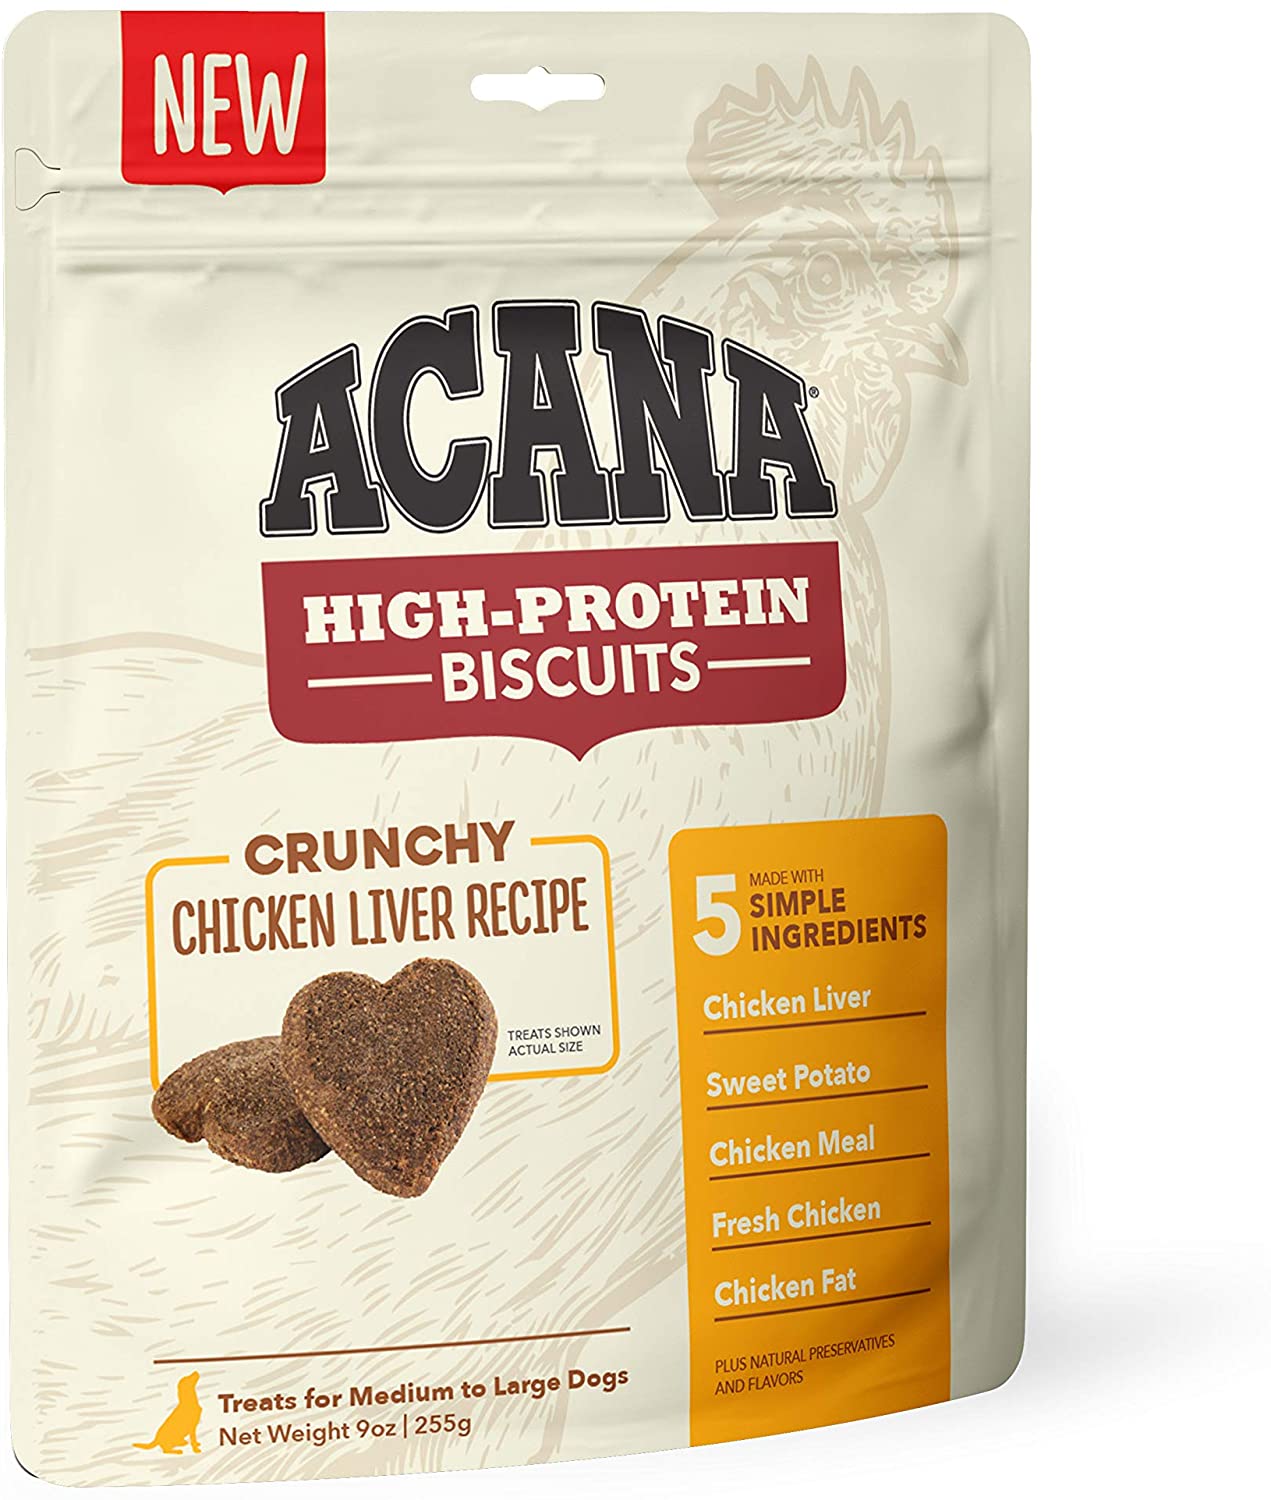 ACANA High-Protein Biscuits, Crunchy Chicken Liver Recipe - 9oz